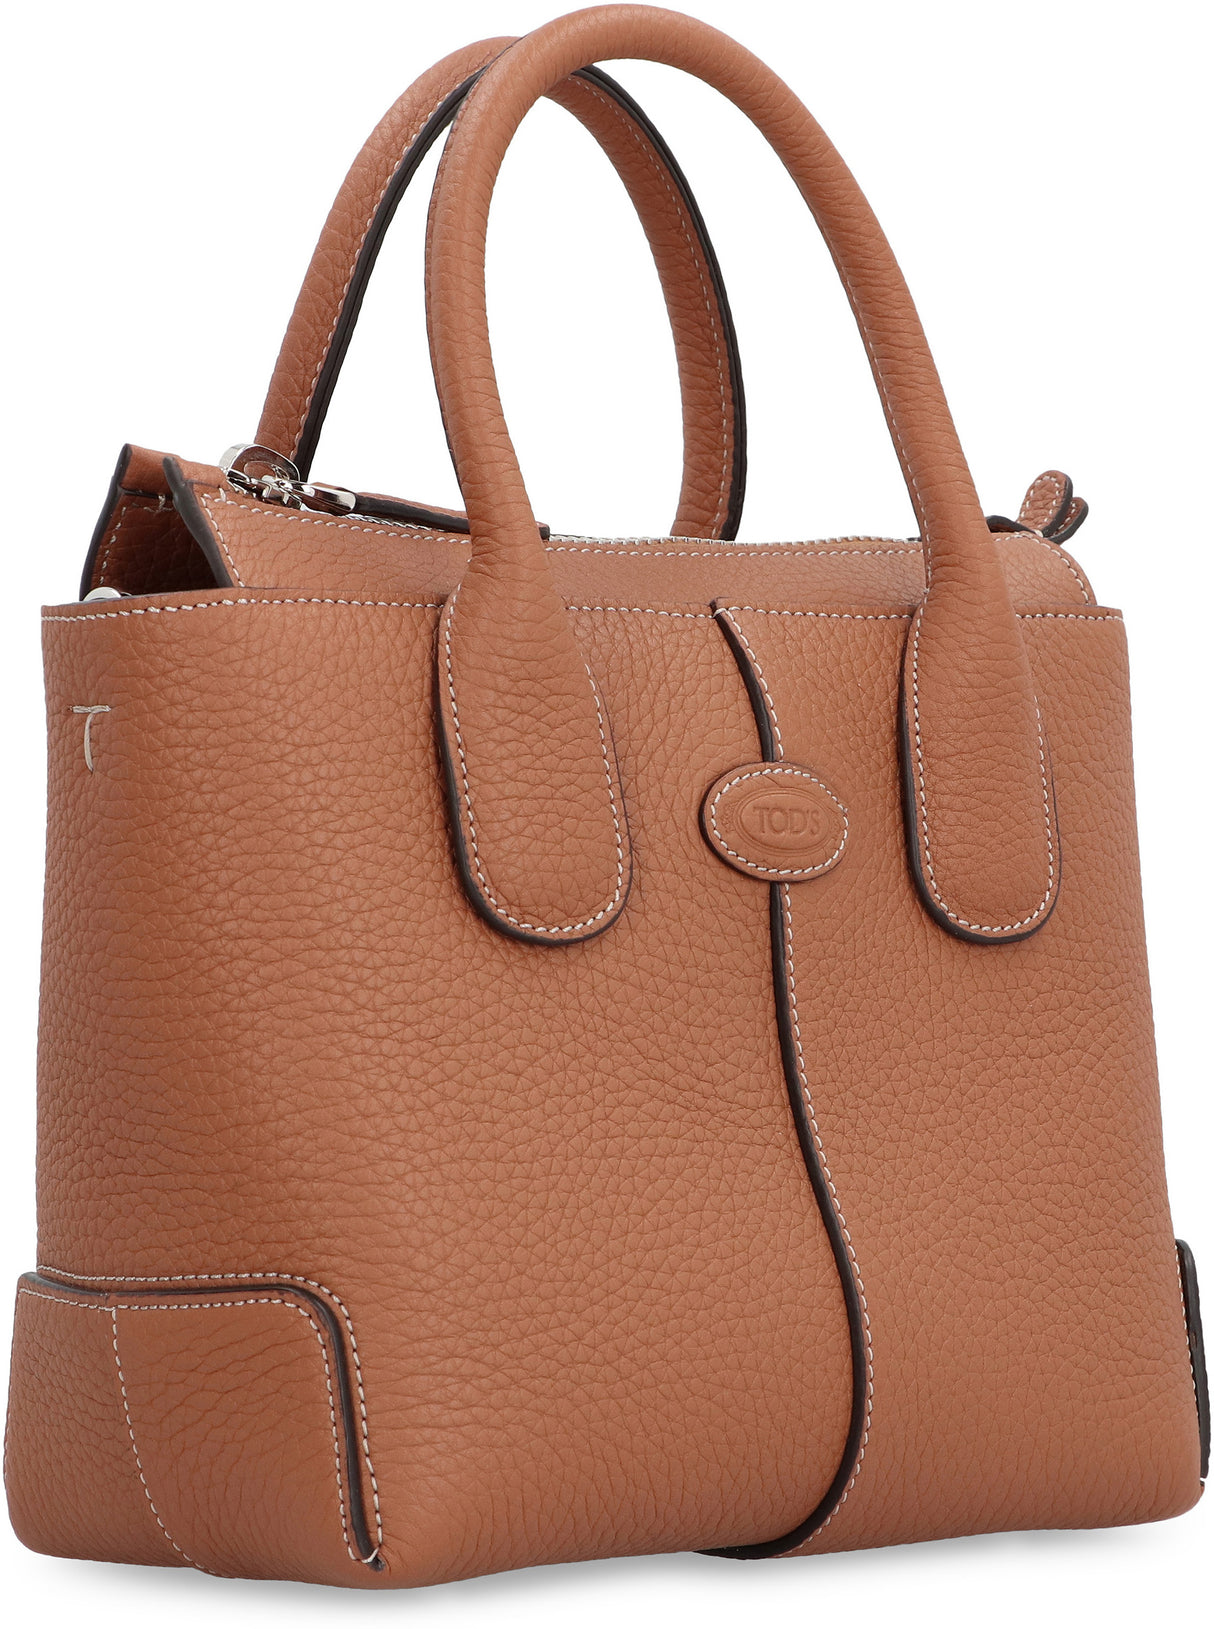 Saddle Brown Peppled Calfskin Tote Handbag with Adjustable Shoulder Strap